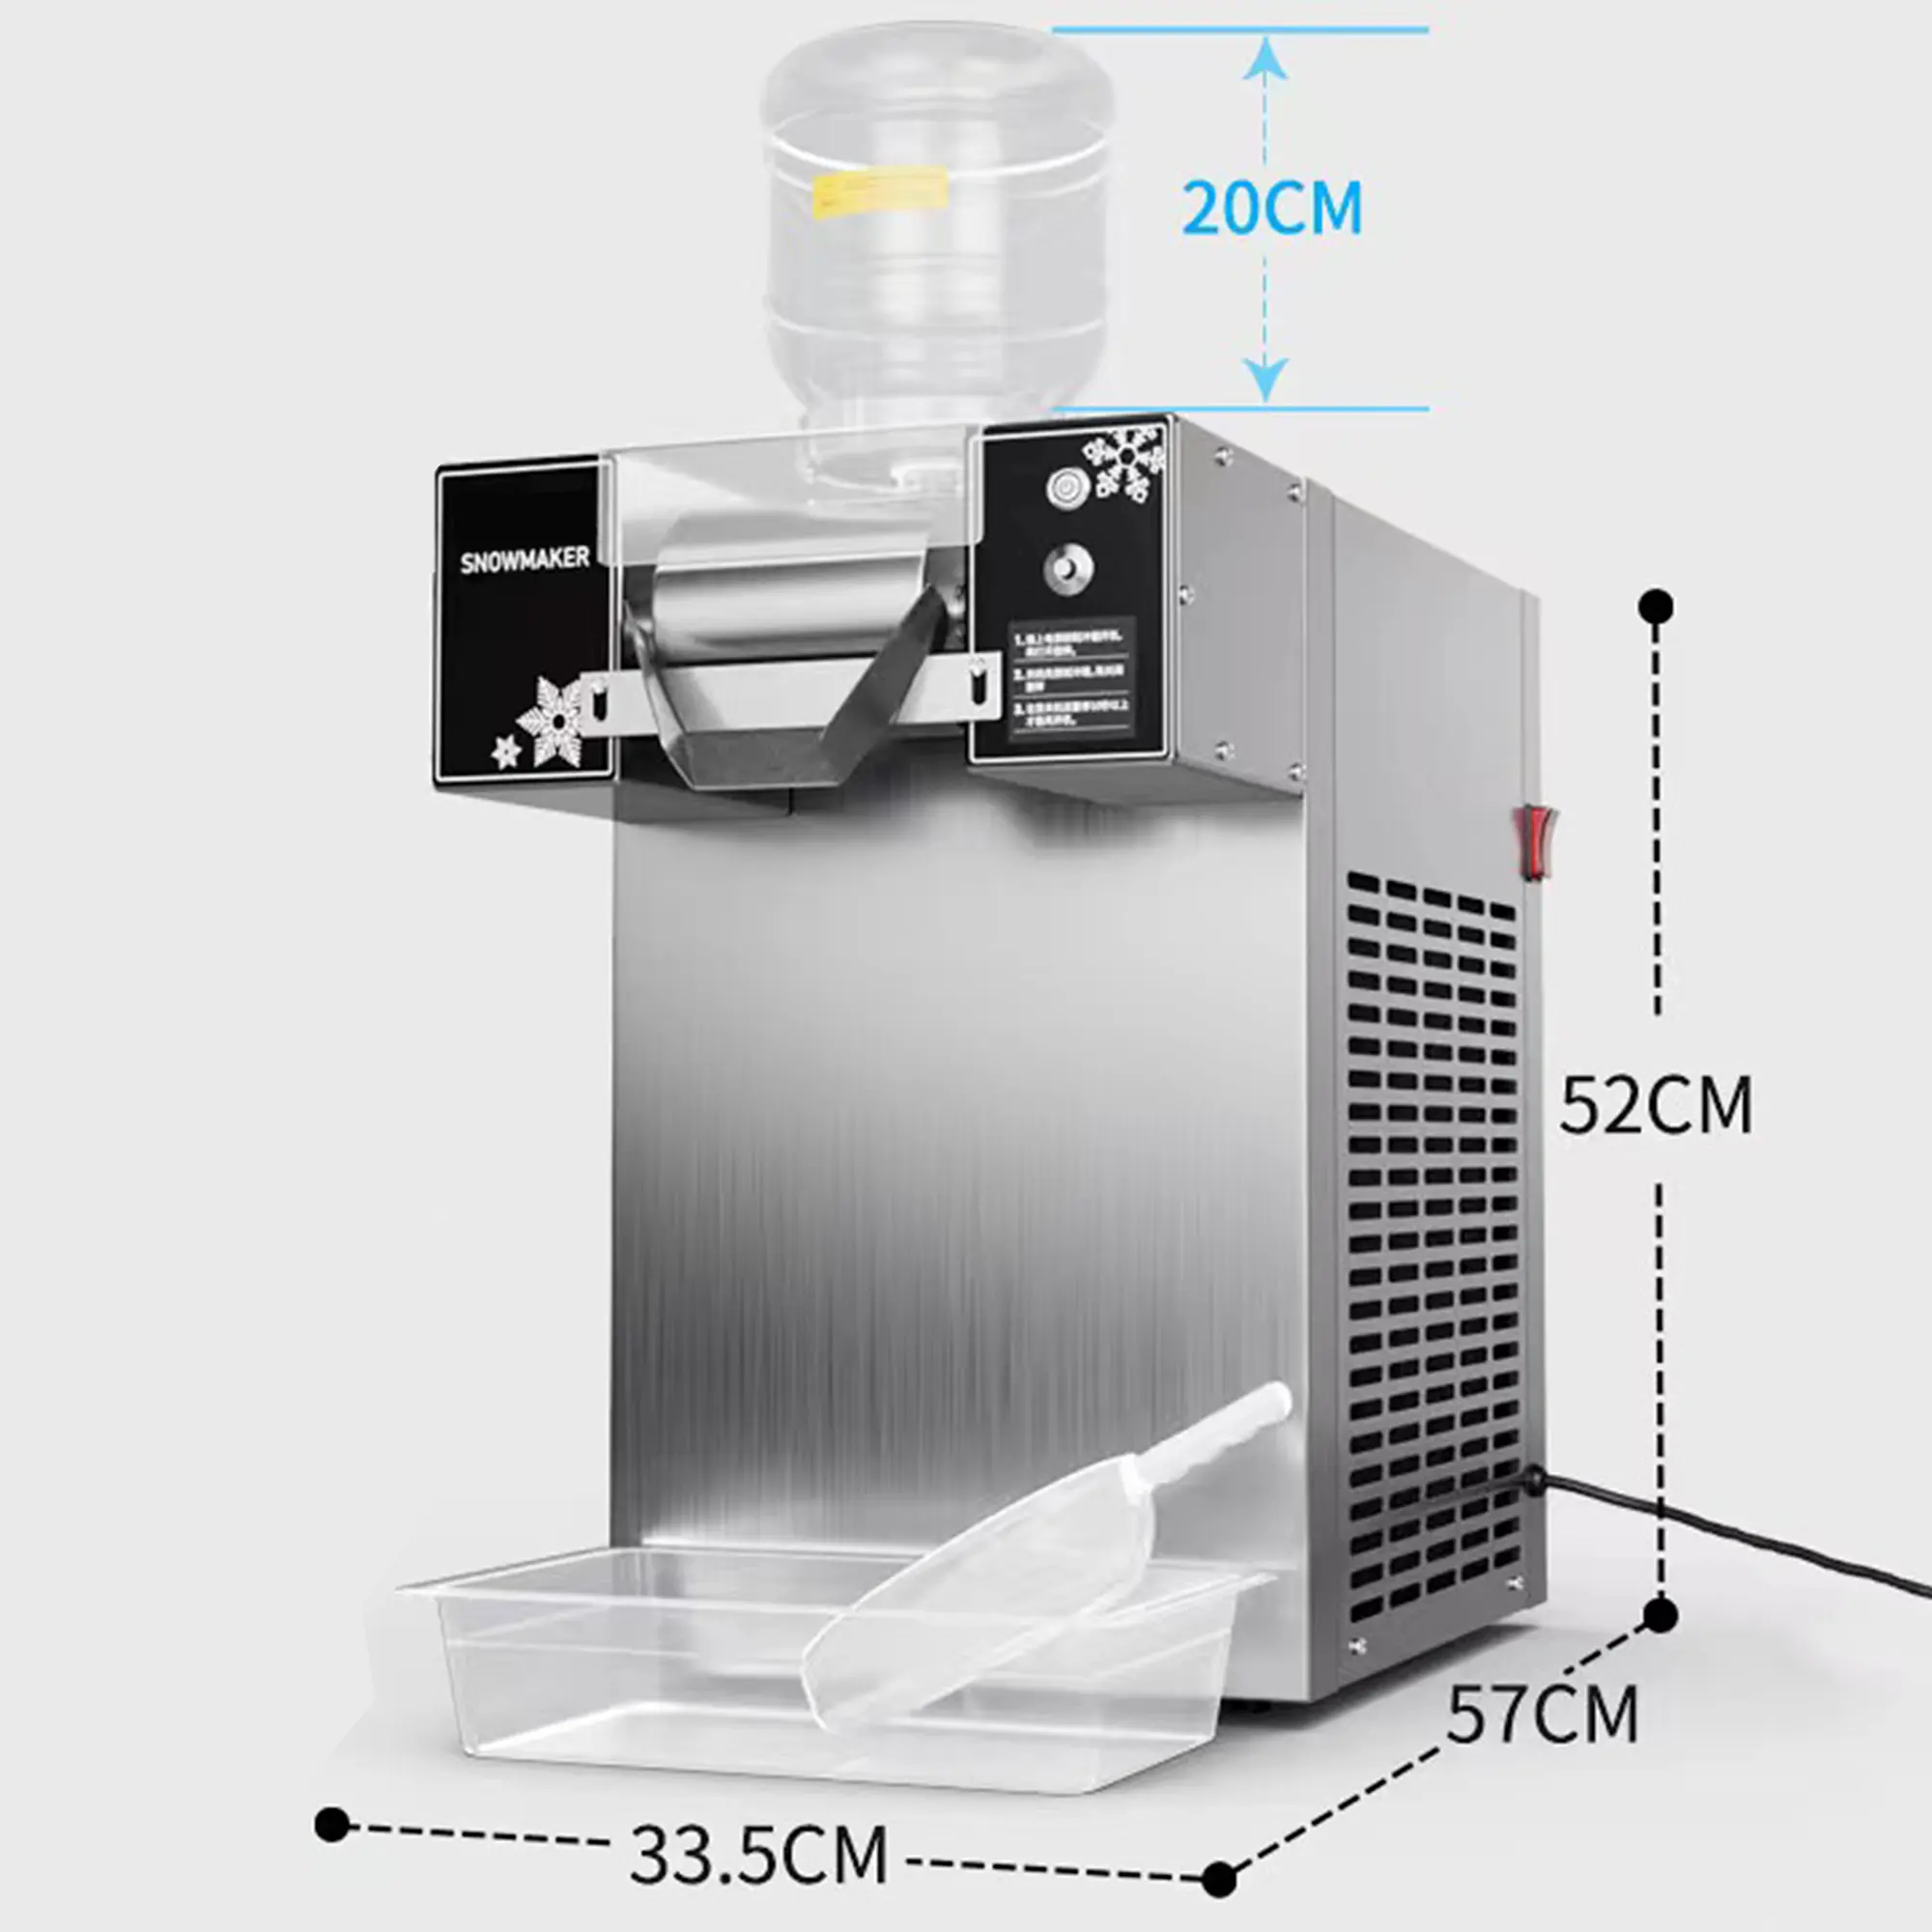 BesCool mesin es salju komersial pabrik OEM langsung baru mesin pembuat es dan salju cepat